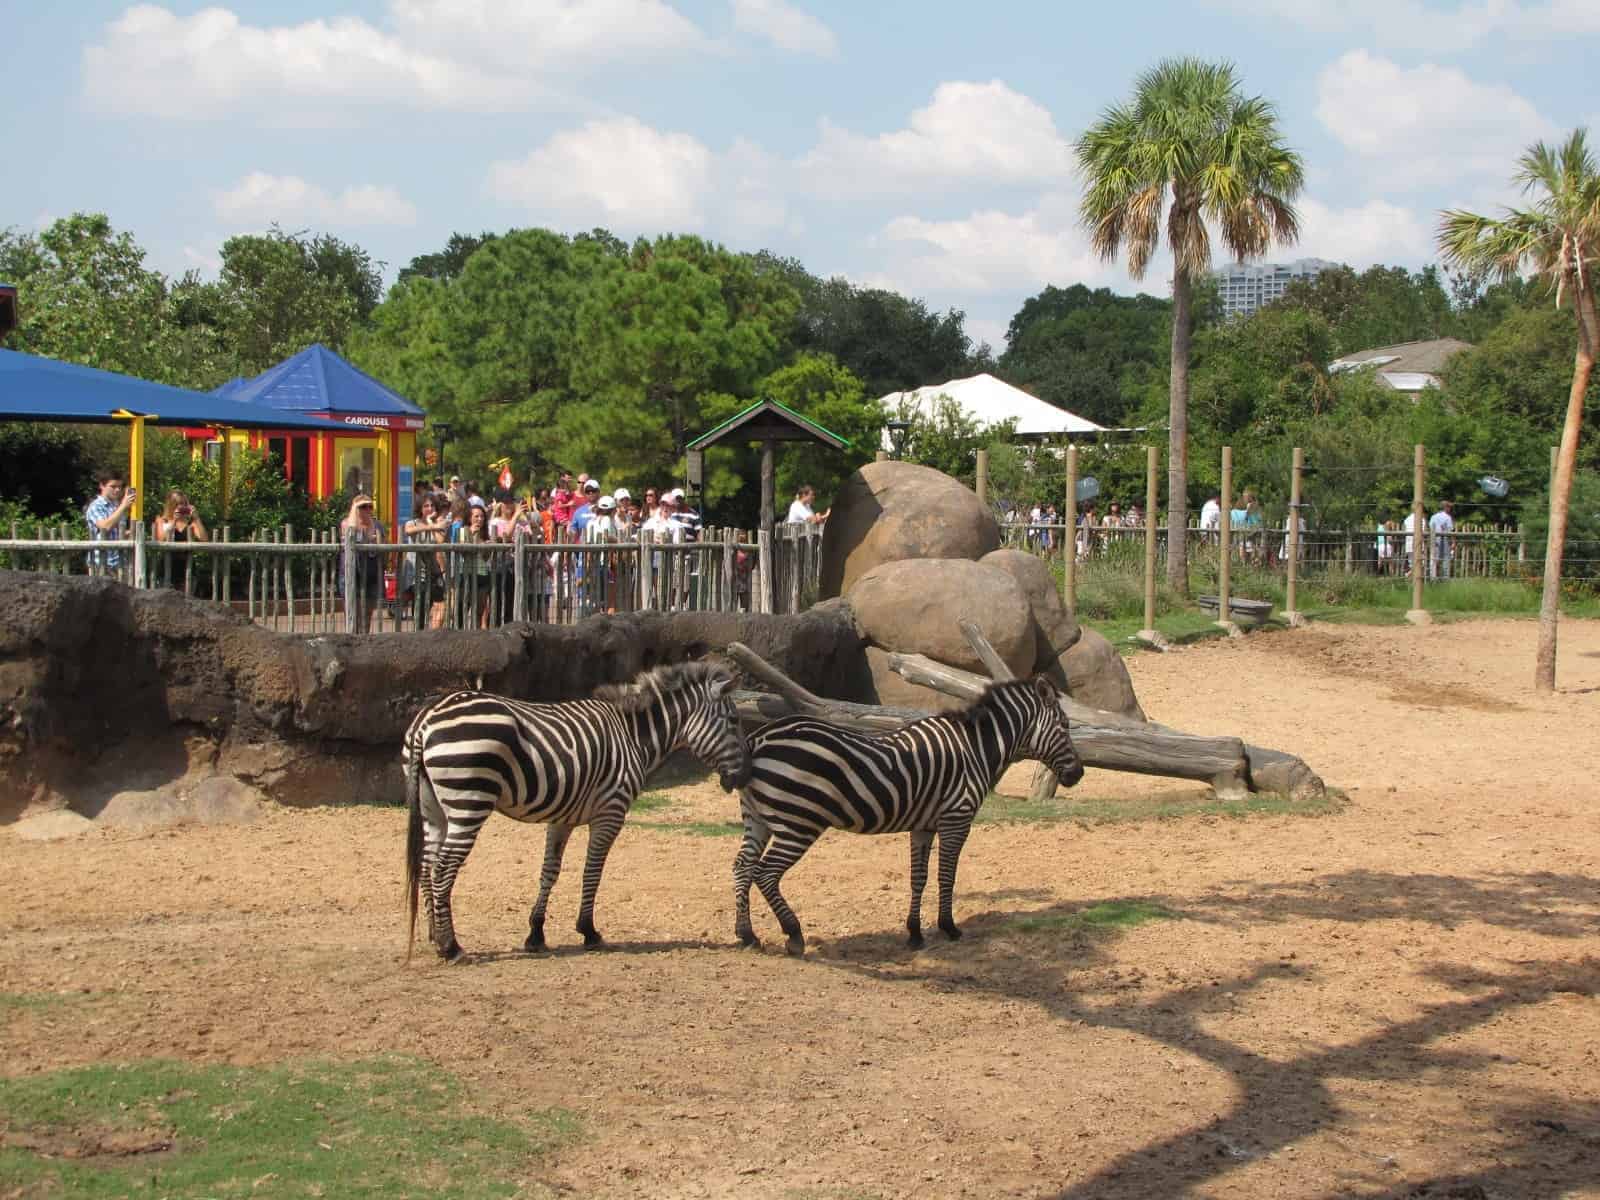 Zebras at Houston Zoo in Houston TX